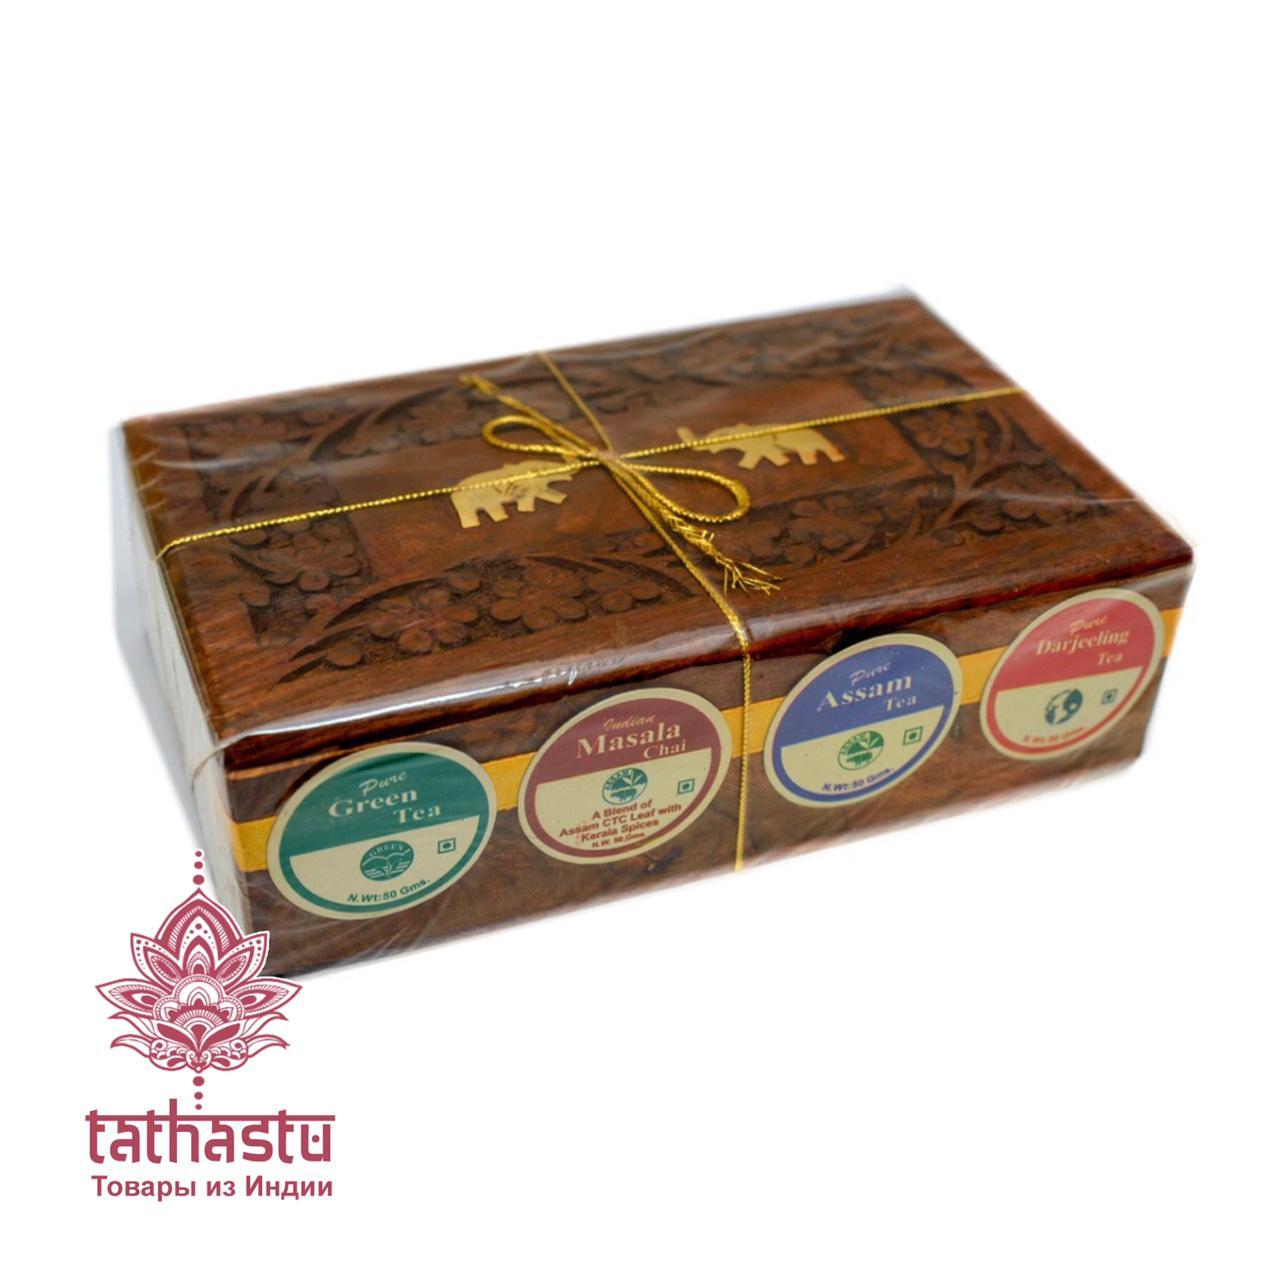 Tathastu красивые подарочные коробки из тикового дерева. Tathastu товары и индии